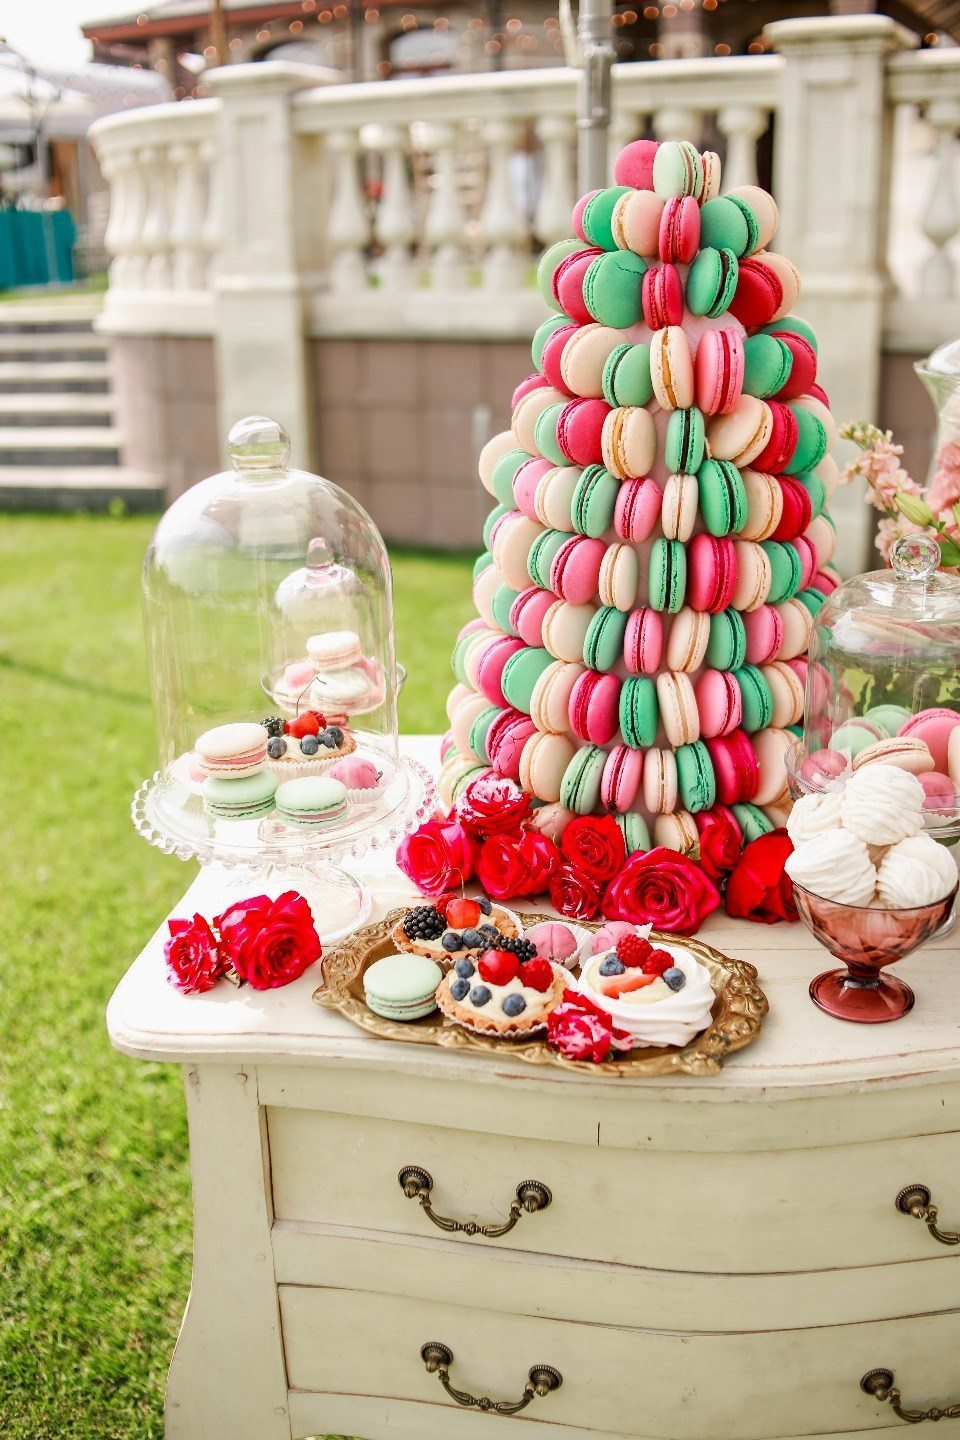 Érdekes akció az édességeknek egy lédús és világos asztalon, az esküvő általános stílusában készült vidám címkék